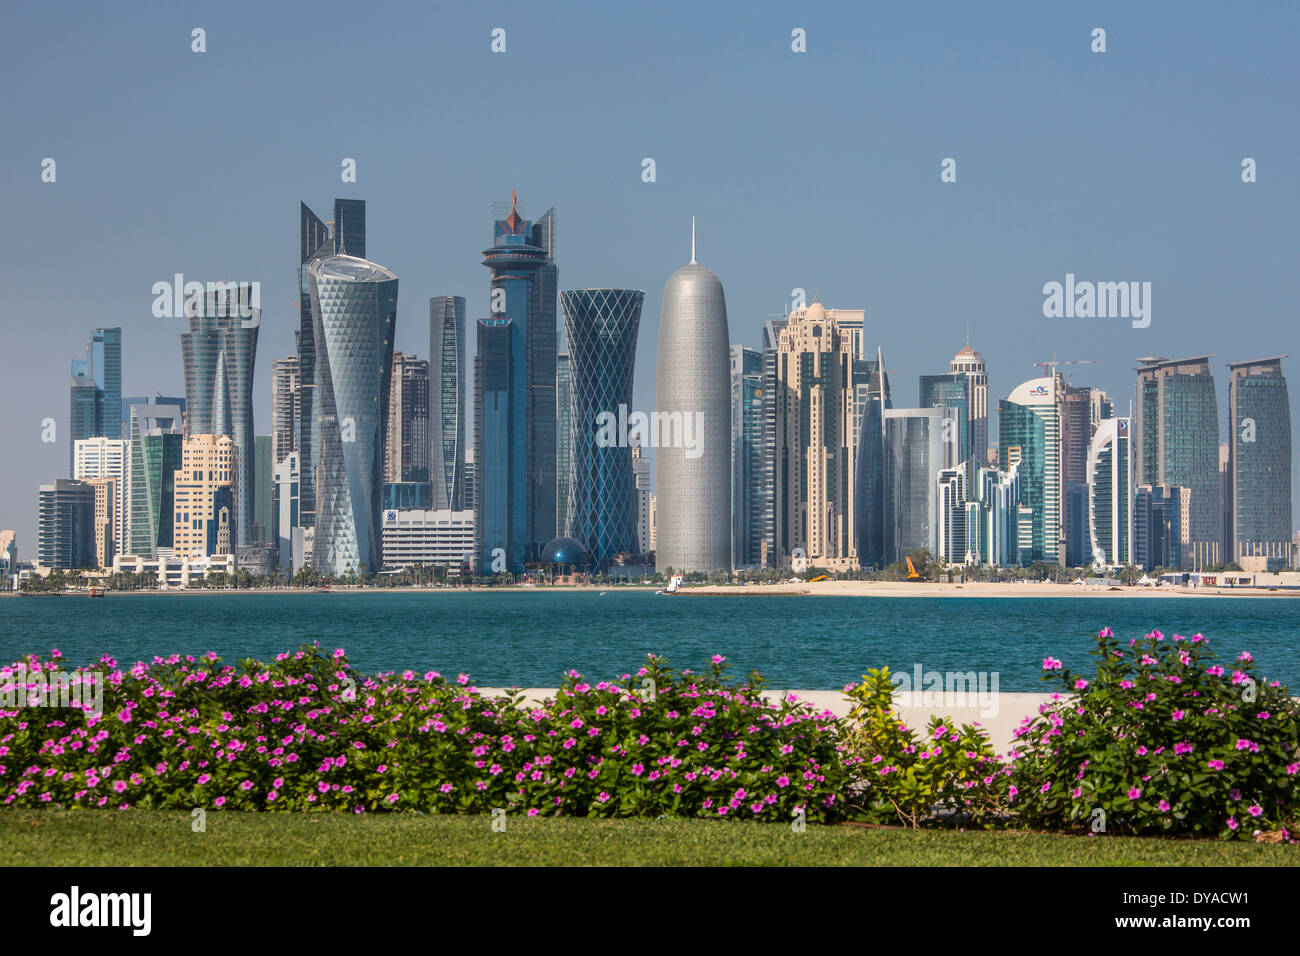 Doha in Qatar Medio Oriente architettura di Bay City coloratissimi fiori corniche skyline futuristica terrazza viaggi turistici acqua w Foto Stock